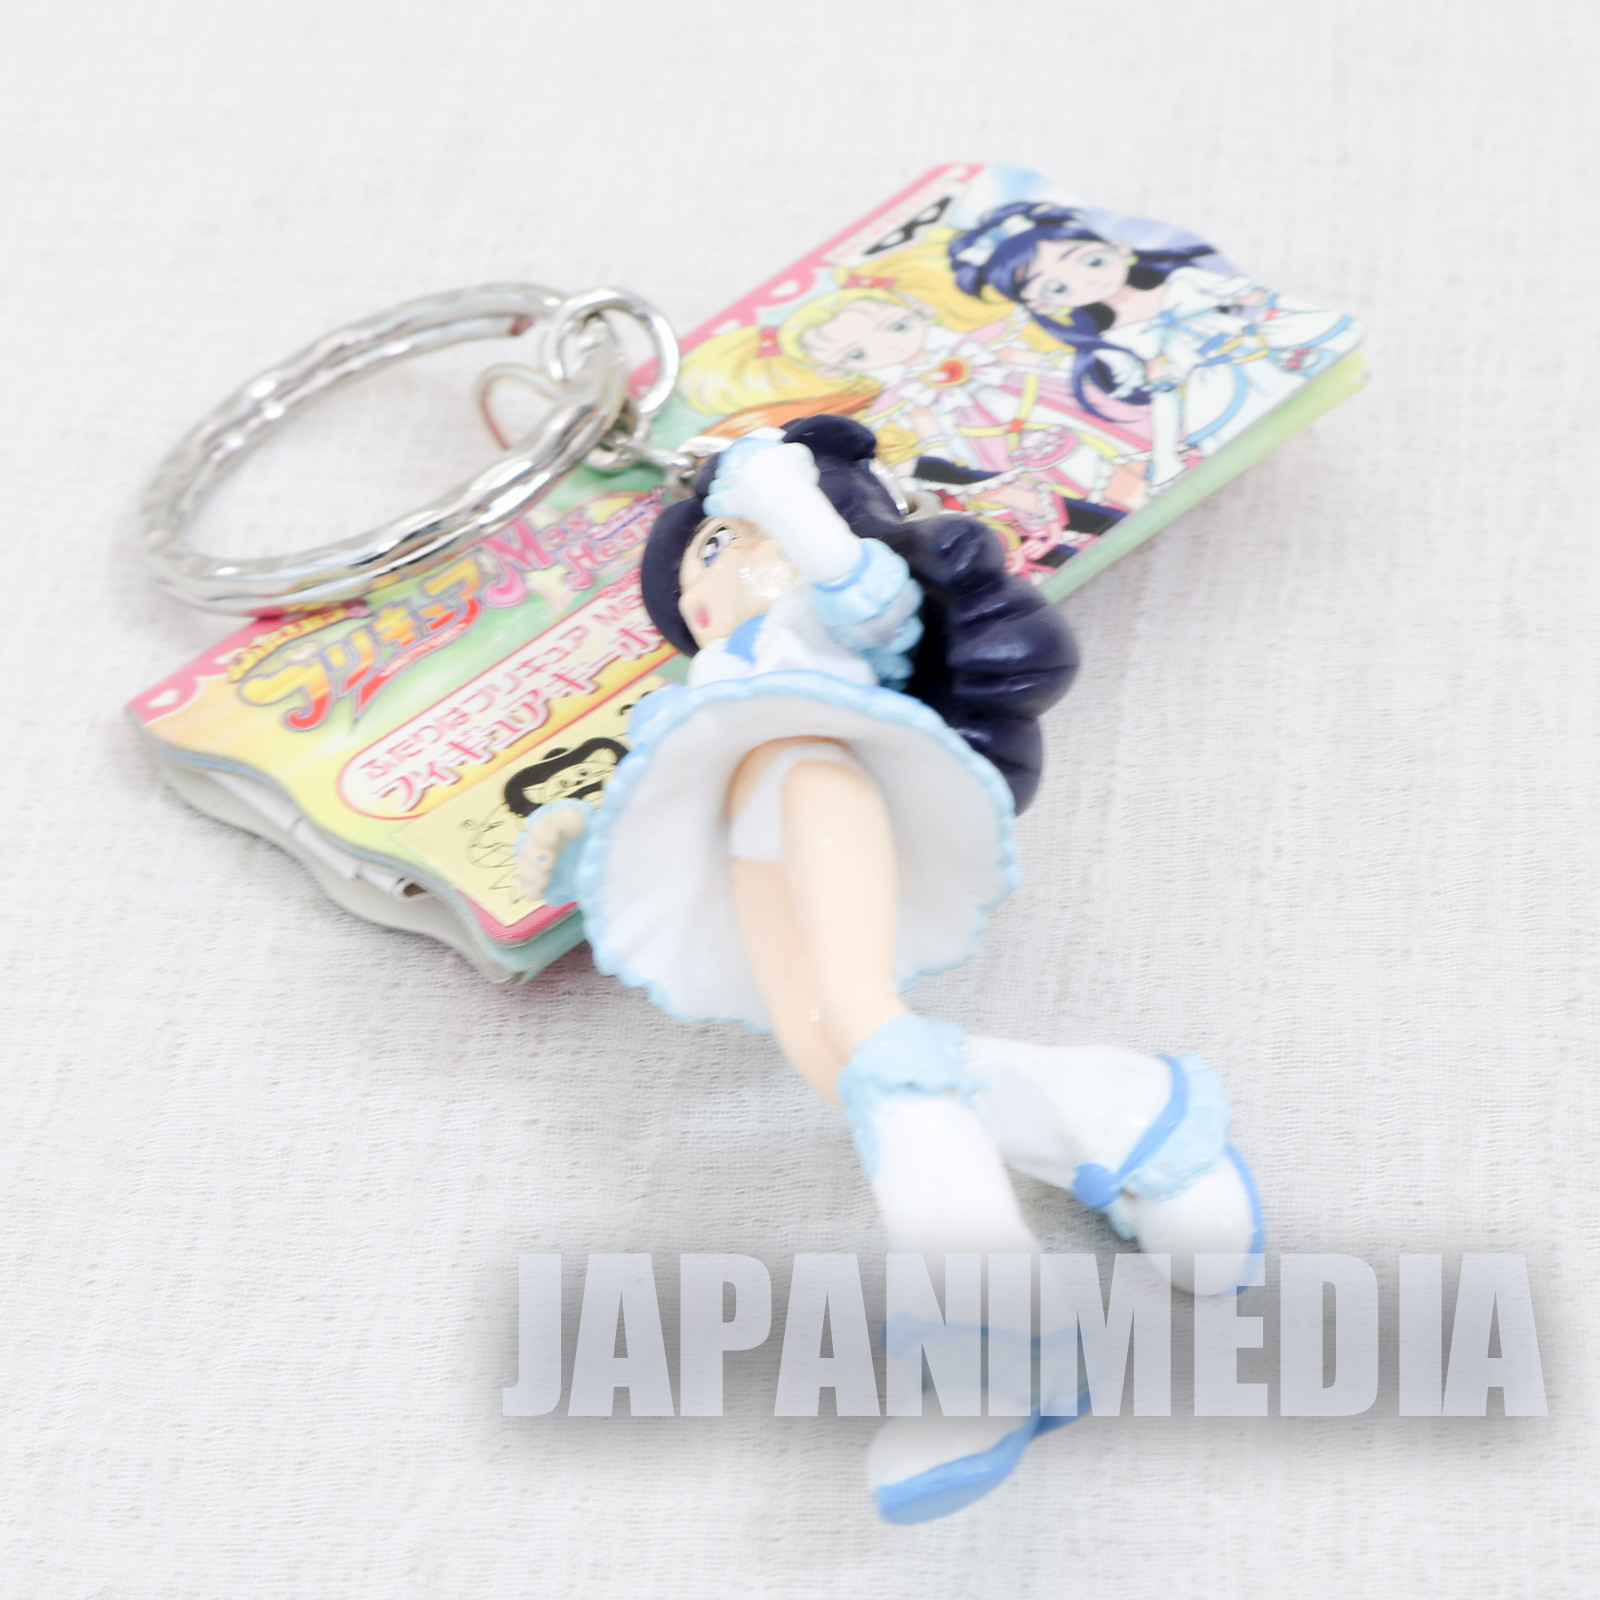 Futari wa Pretty Cure Max Heart Cure White Figure Keychain Banpresto JAPAN